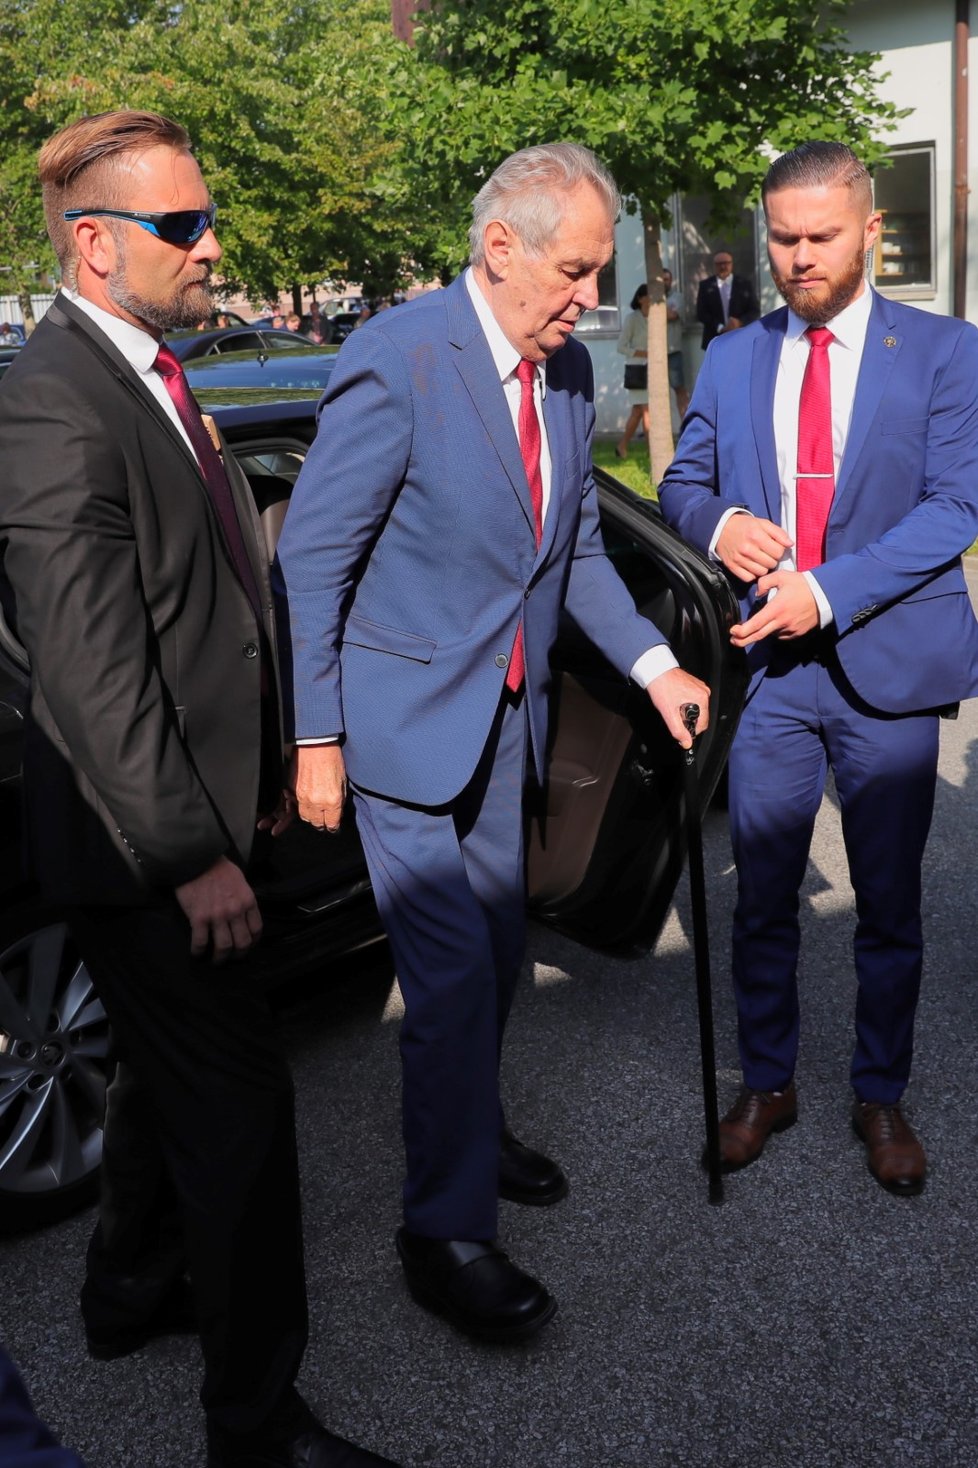 Prezident Miloš Zeman dorazil na Zemi živitelku (22. 8. 2019), aby ji zahájil projevem